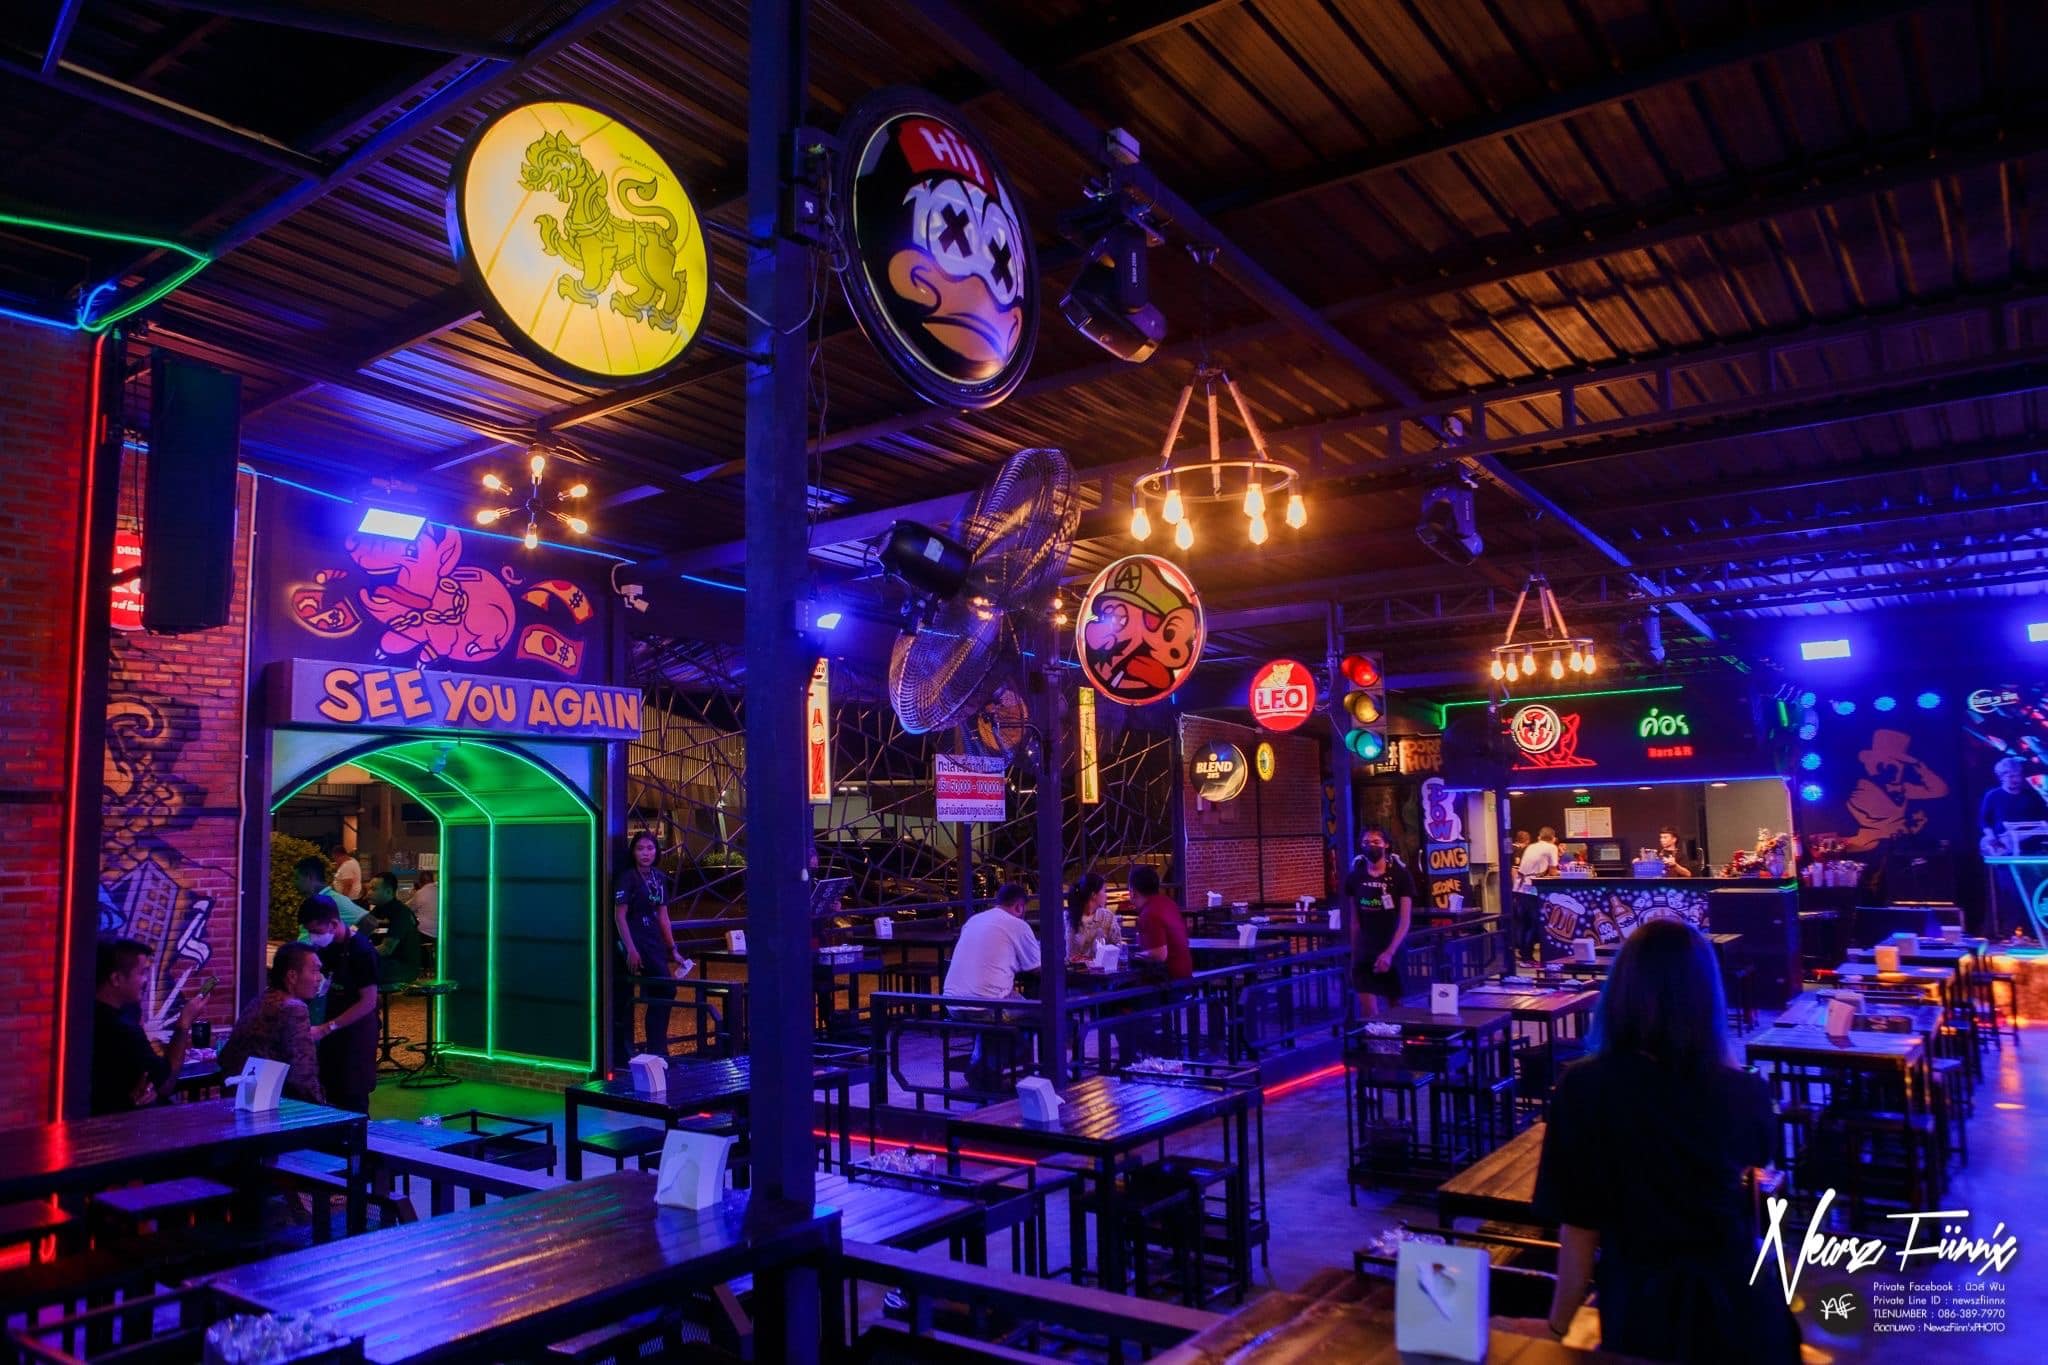 ค่อยๆจิบ Bar&restaurant (ค่อยๆจิบ Bar&restaurant) : นนทบุรี (Nonthaburi)